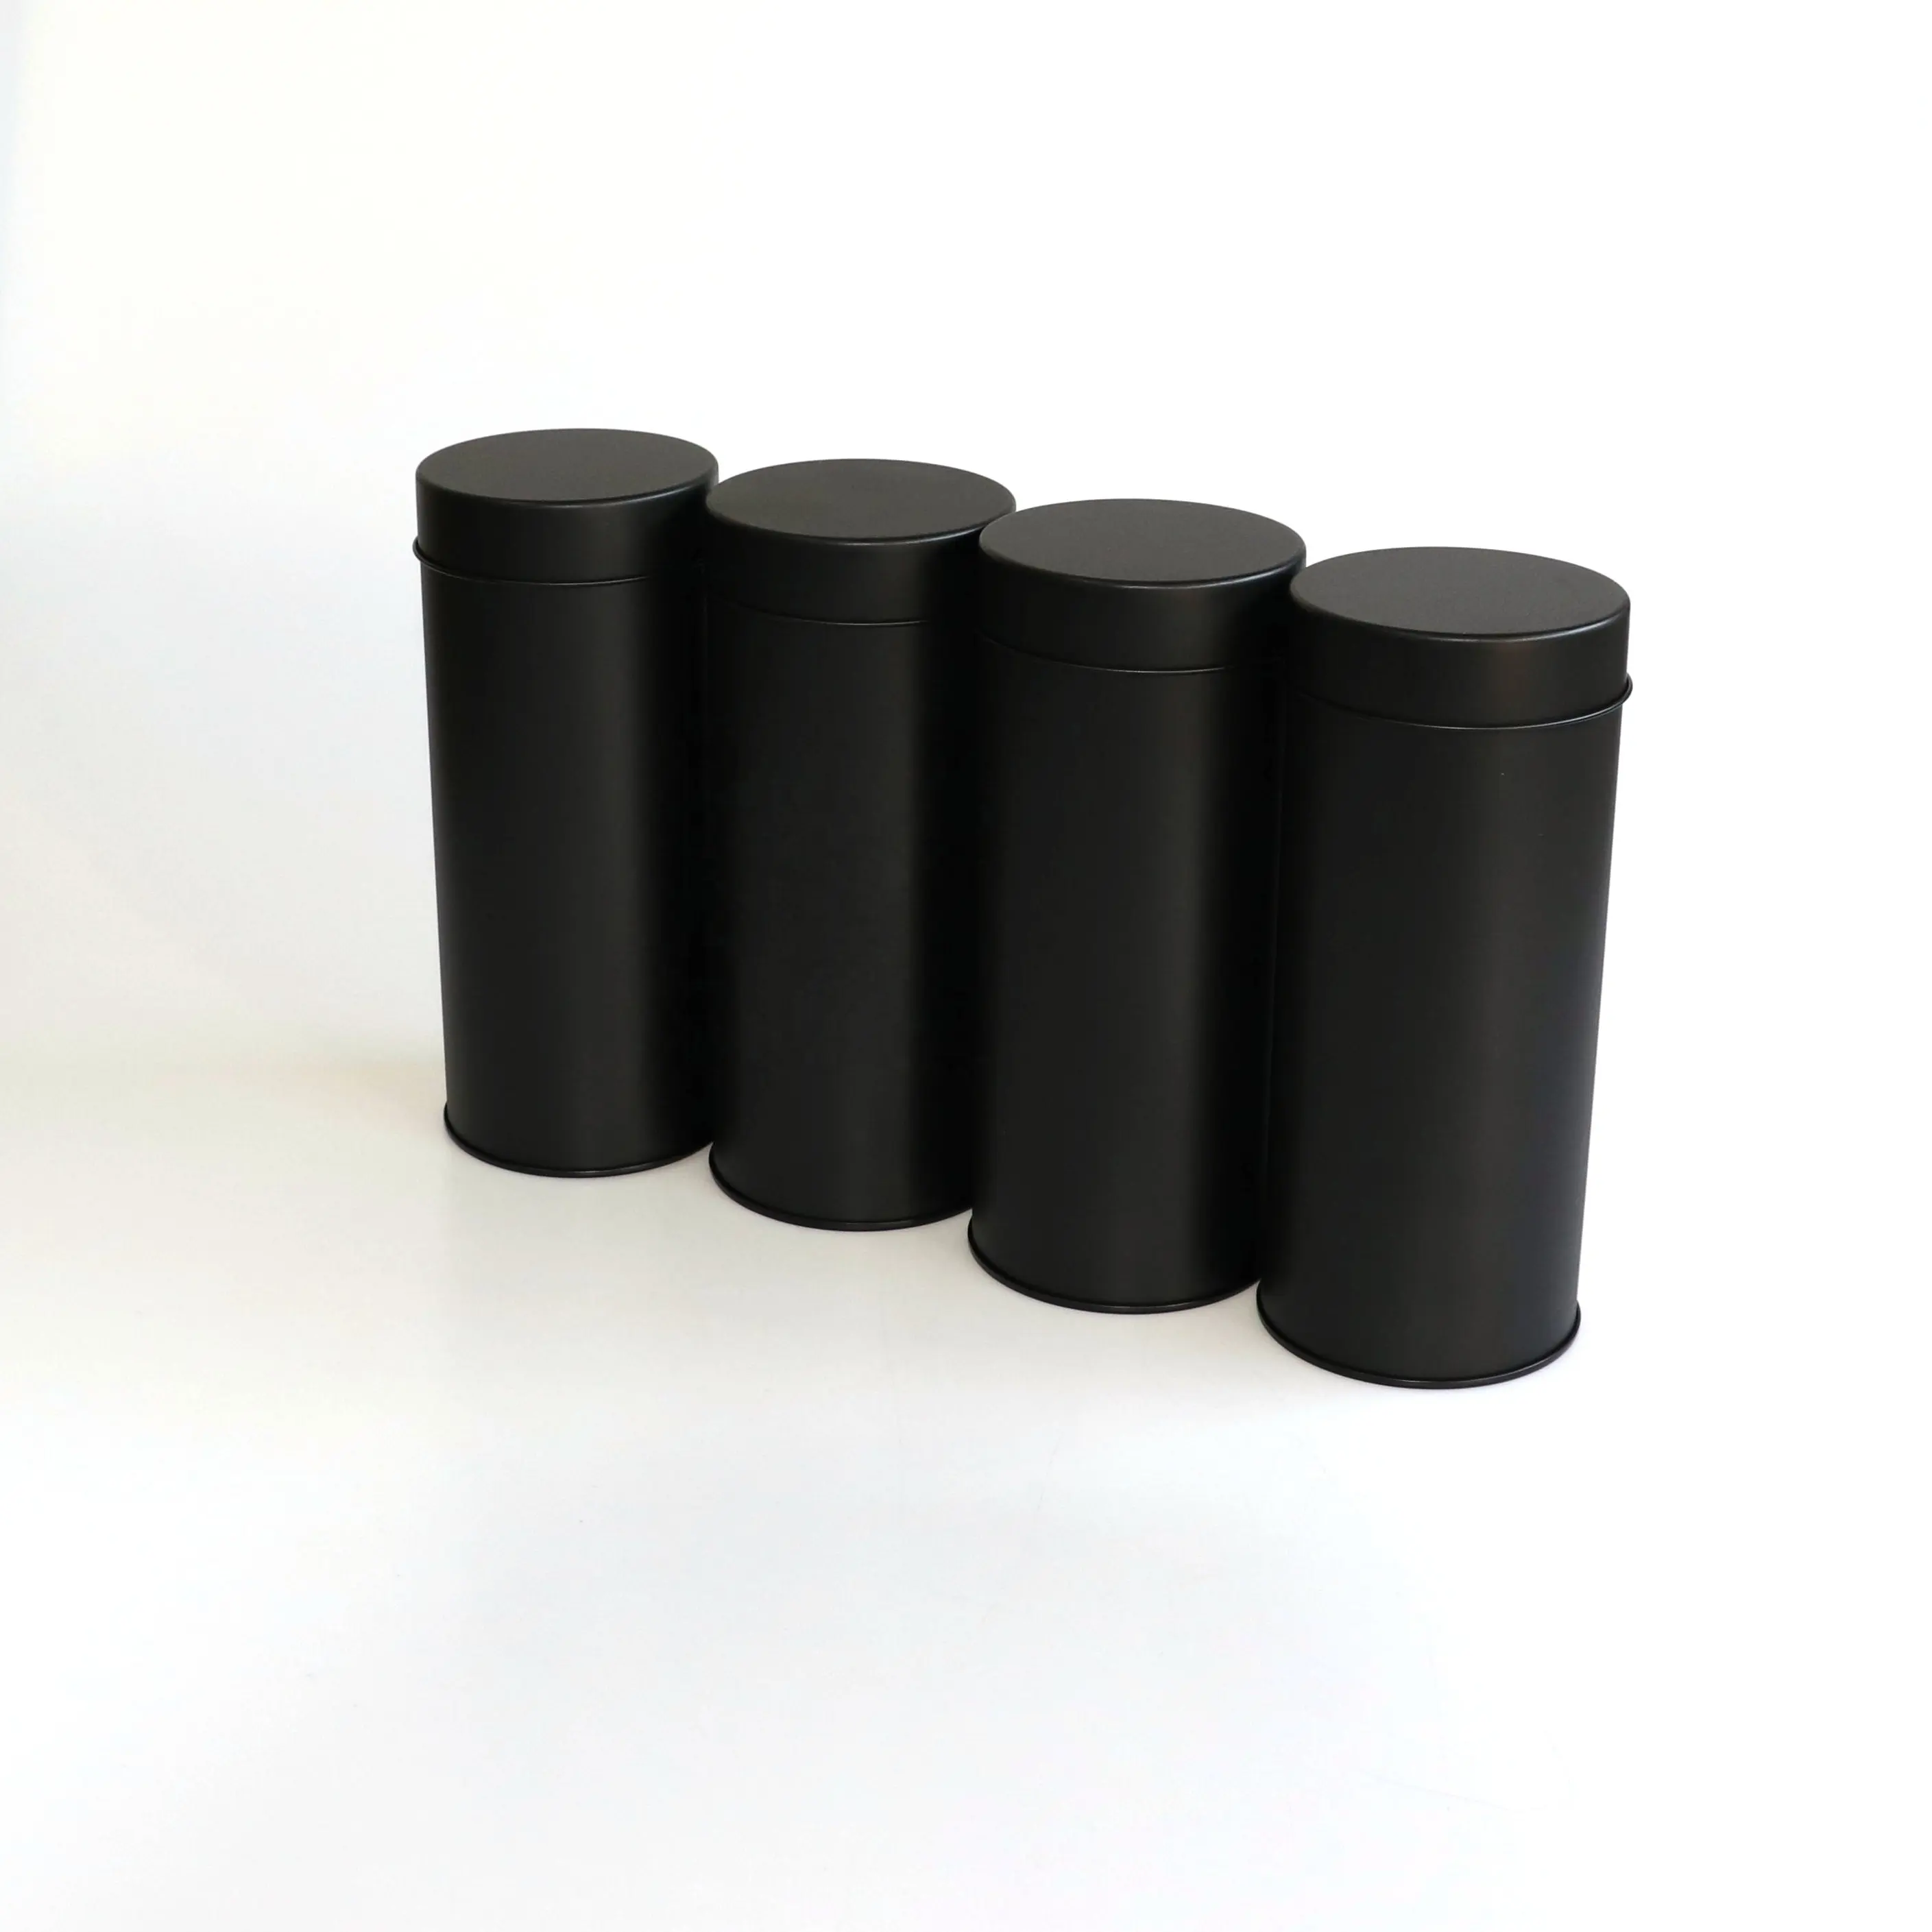 Benutzer definierte Luxus-Metall verpackung Große Blechdosen Runde Tee Kaffee Candy Gläser Zylinder Lagerung Quadratische Dosen Mit Deckel